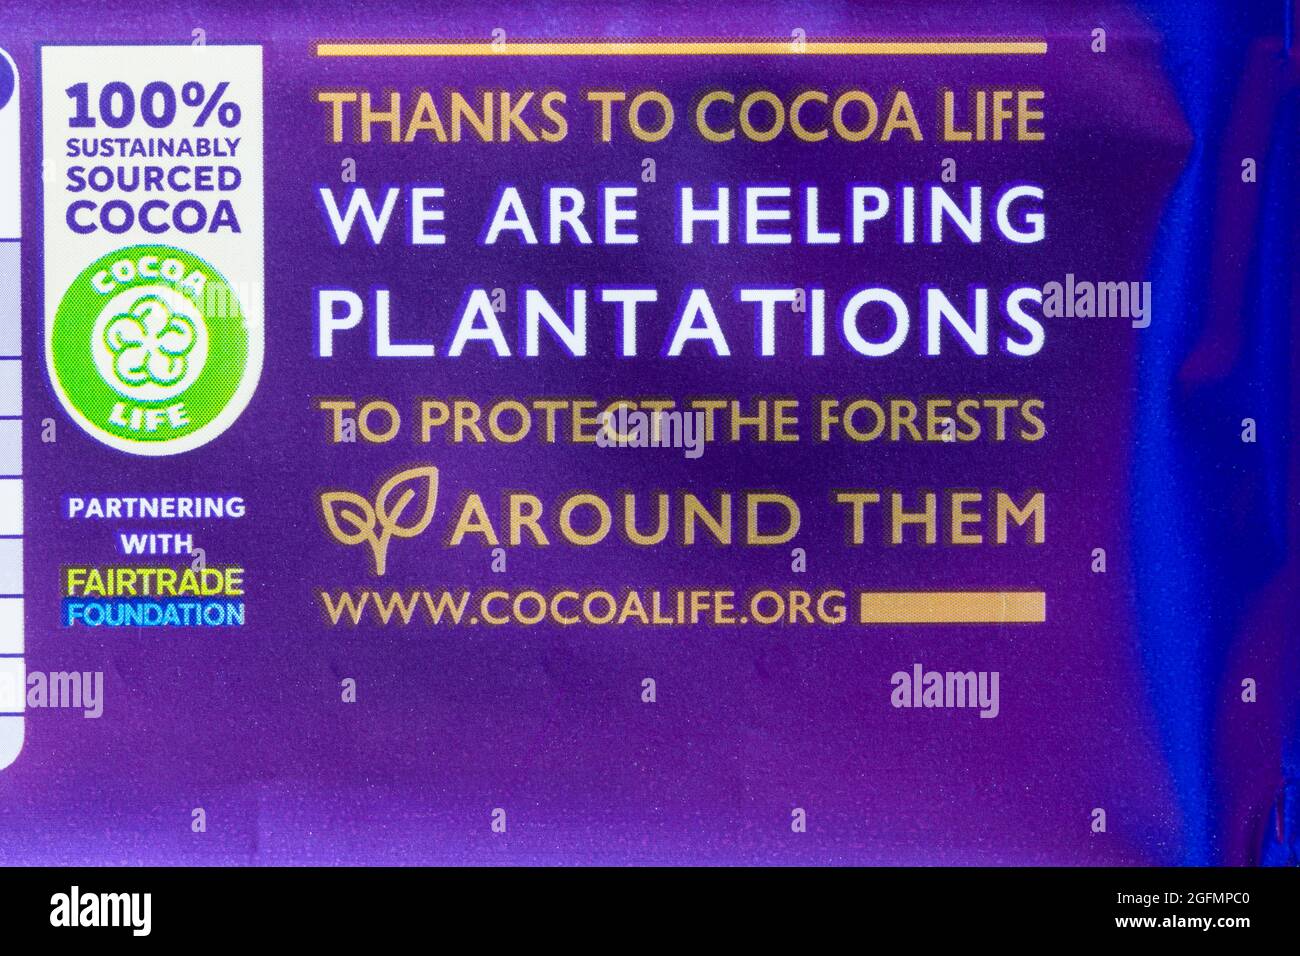 Il 100% di cacao è stato reperito in modo sostenibile grazie a Cocoa Life, stiamo aiutando le piantagioni a proteggere le foreste che li circondano collaborando con Fairtrade Foundation Foto Stock